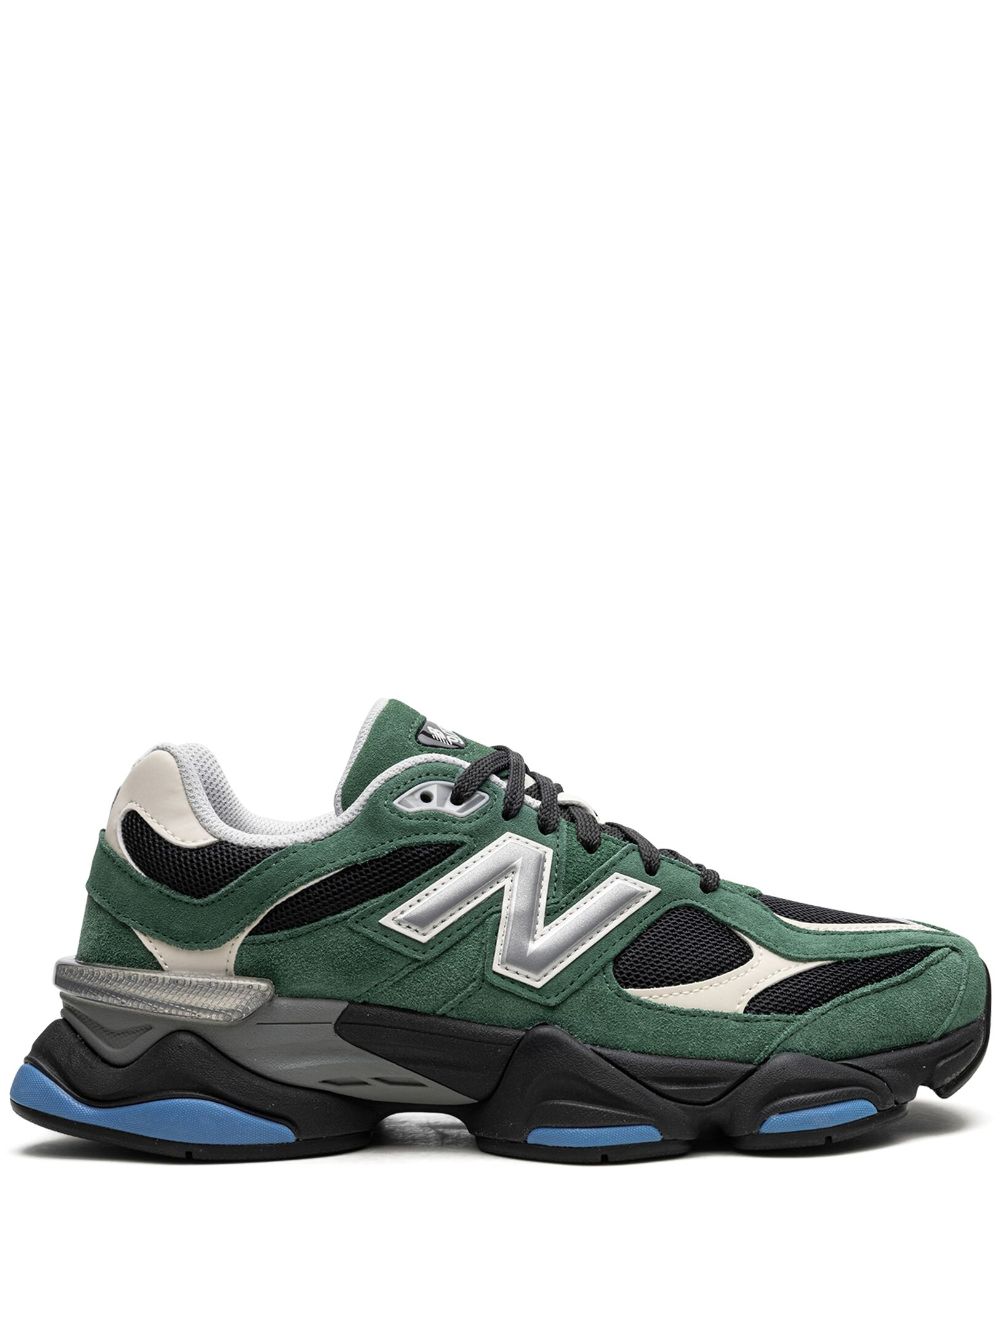 New Balance 9060 sneakers - Groen